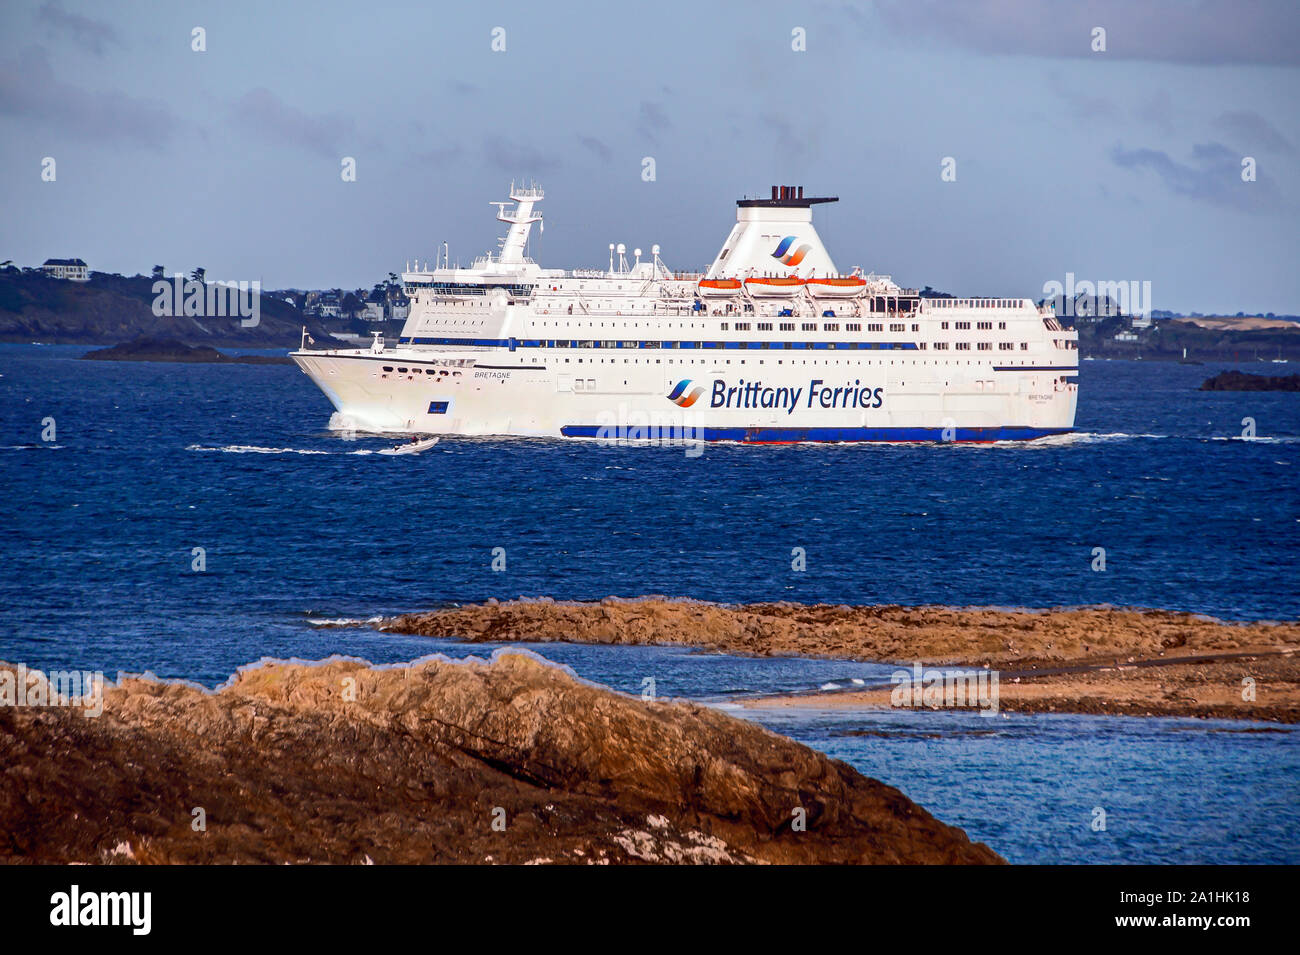 Brittany Ferries car ferry et Britannia arriver au port de Saint-Malo Bretagne France Banque D'Images